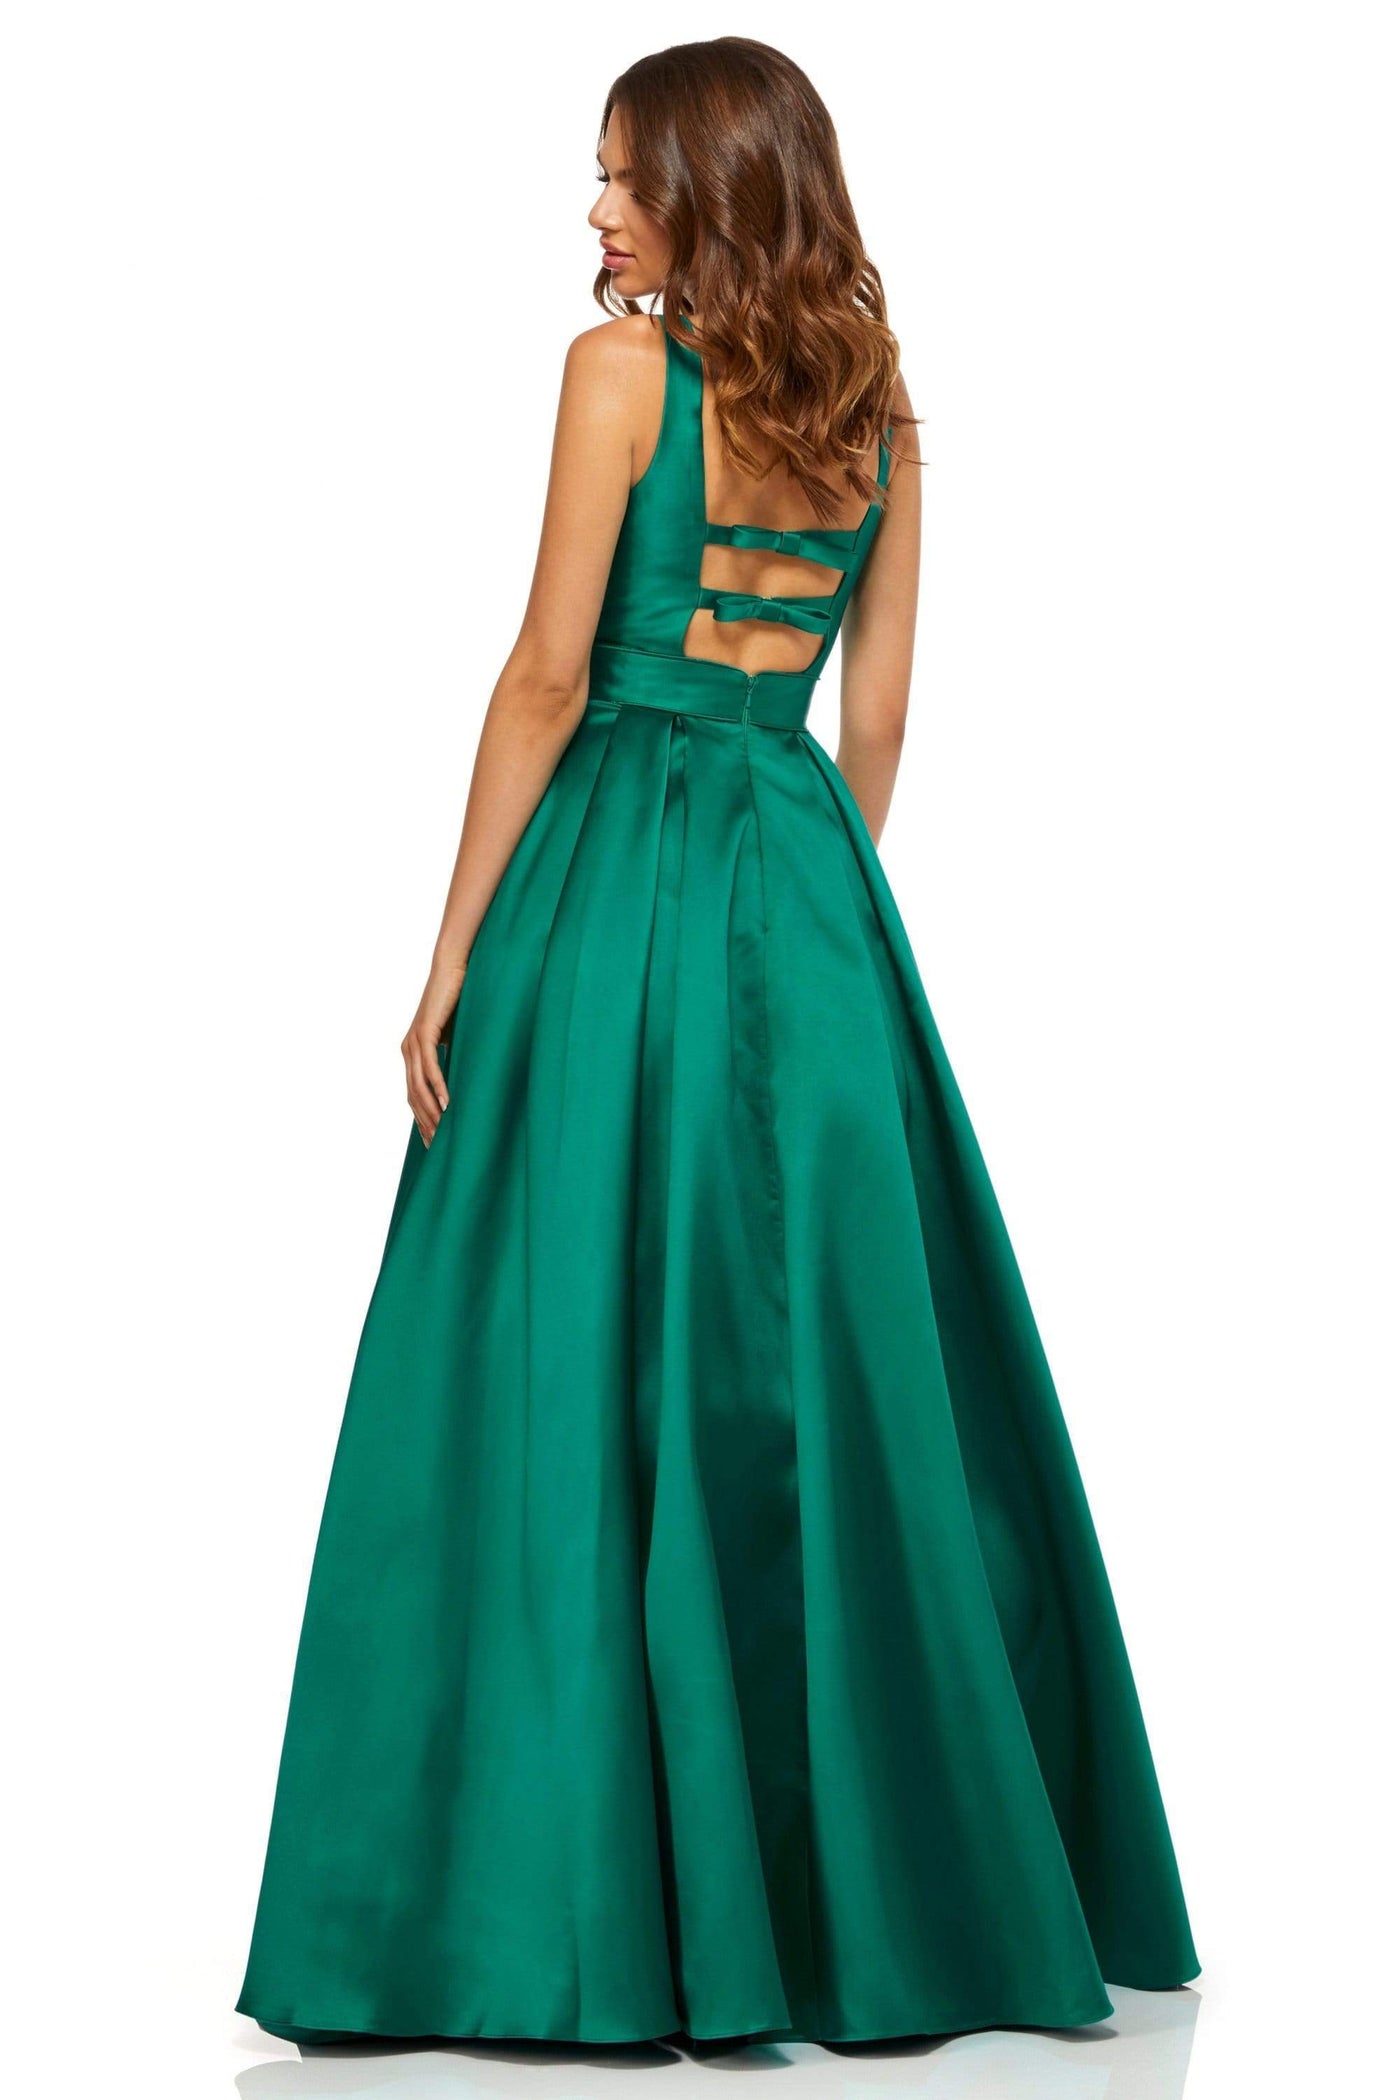 Sherri Hill - 52502 Sherri Hill Taffeta A Line Dress Evening Dresses